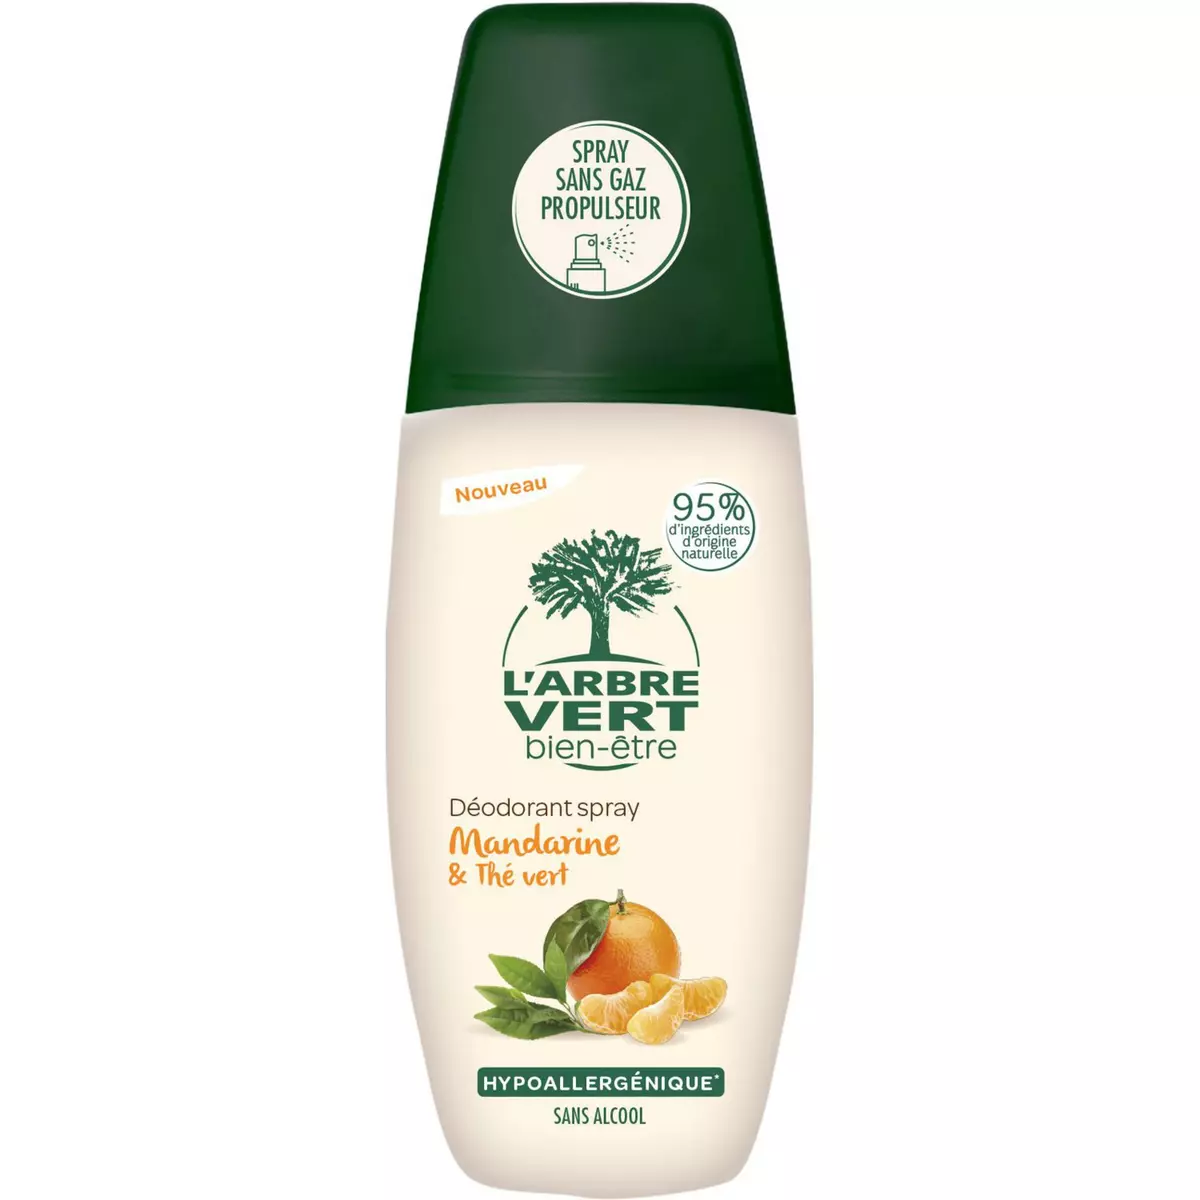 L'ARBRE VERT Déodorant spray hypoallergénique anti-traces mandarine et thé vert 75ml